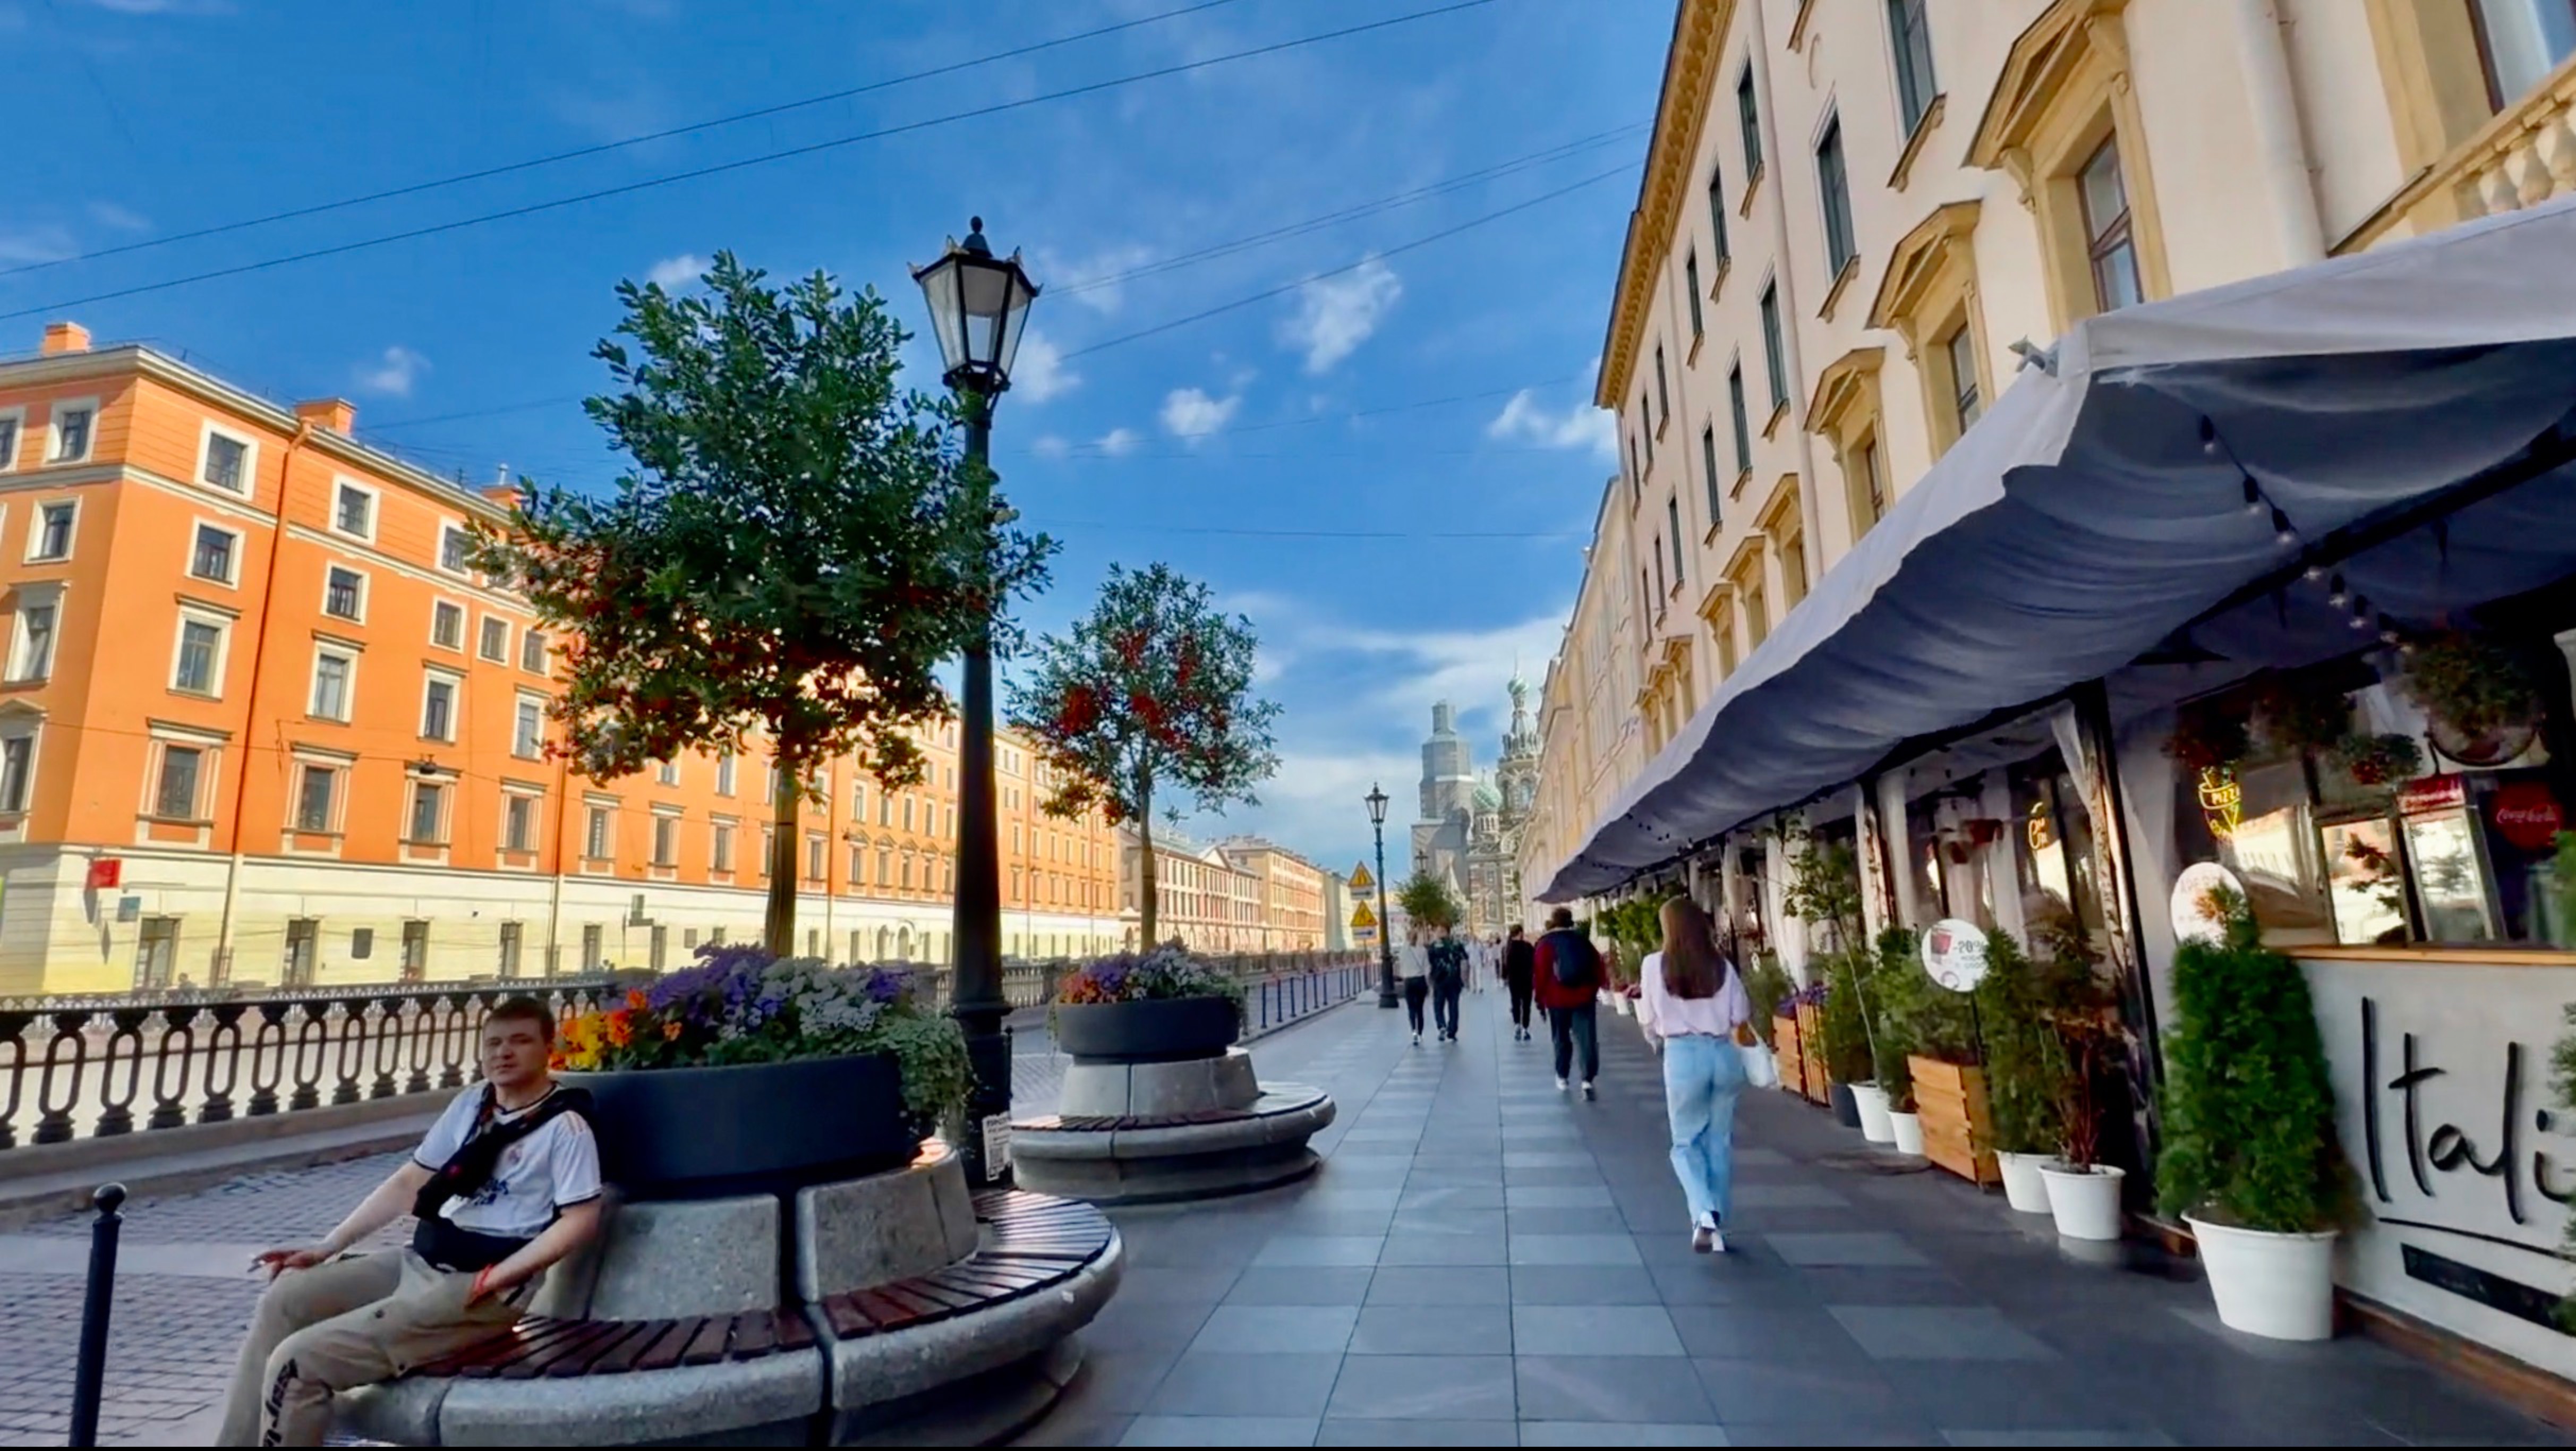 Едем по Невскому проспекту, идём на завтрак в MarketPlace на Канале Грибоедова. Санкт-Петербург.